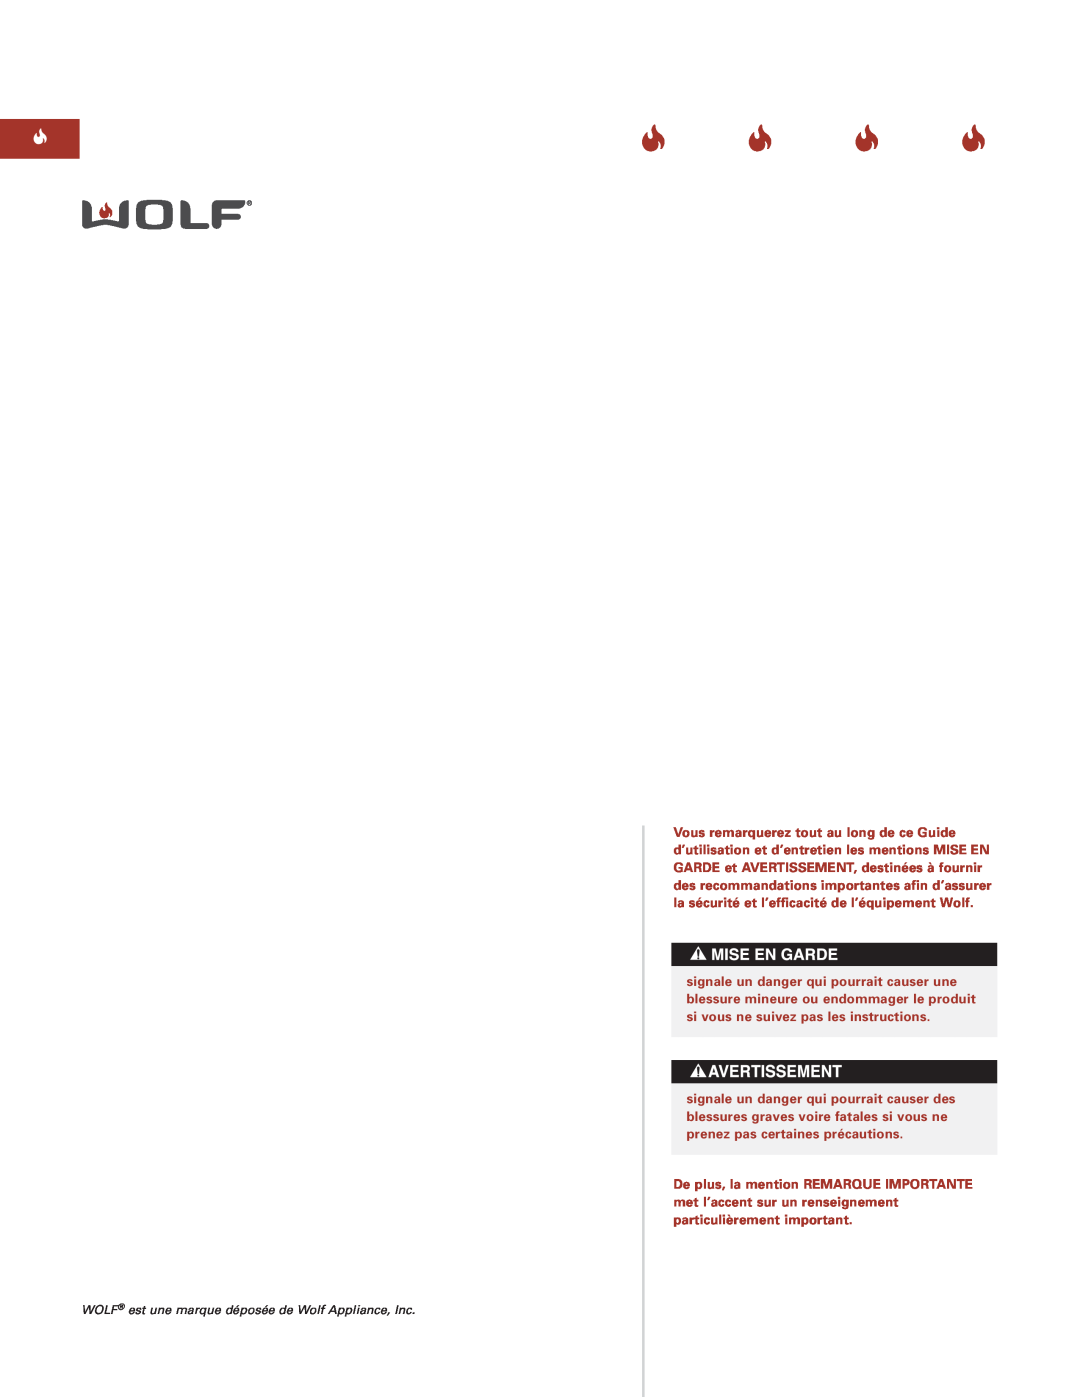 Sub-Zero Sealed Burner RangeTop manual WOLF est une marque déposée de Wolf Appliance, Inc 